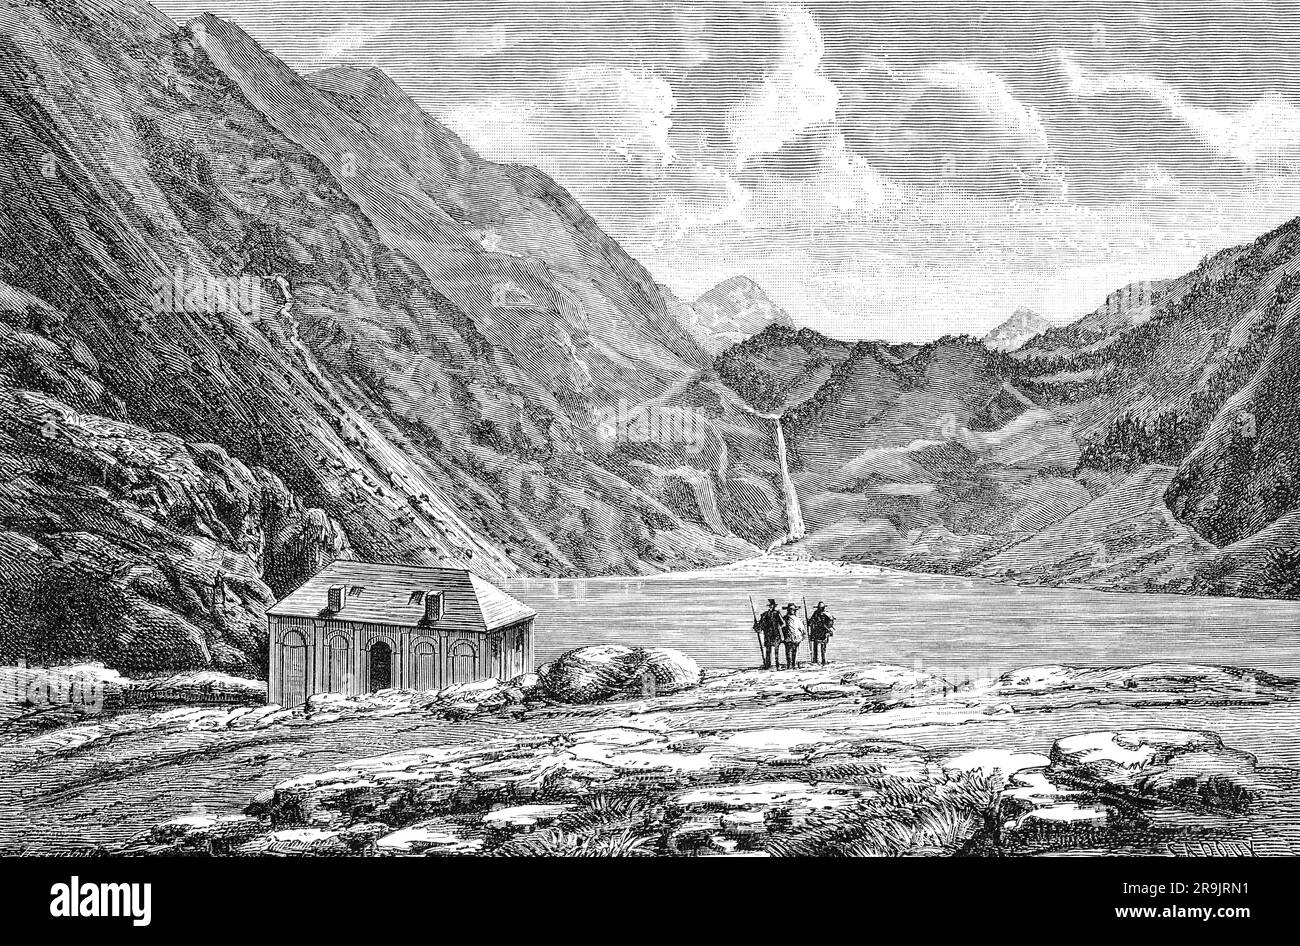 Eine Illustration der Menschen aus dem späten 19. Jahrhundert am Ufer des Lac d'Oô, einem See in den Pyrenäen, der vor allem für seinen 275 Meter hohen Wasserfall bekannt ist. Dieser natürliche See, der früher Lac de Séculéjo genannt wurde, ist seit dem Bau eines Staudamms künstlich geworden. Stockfoto